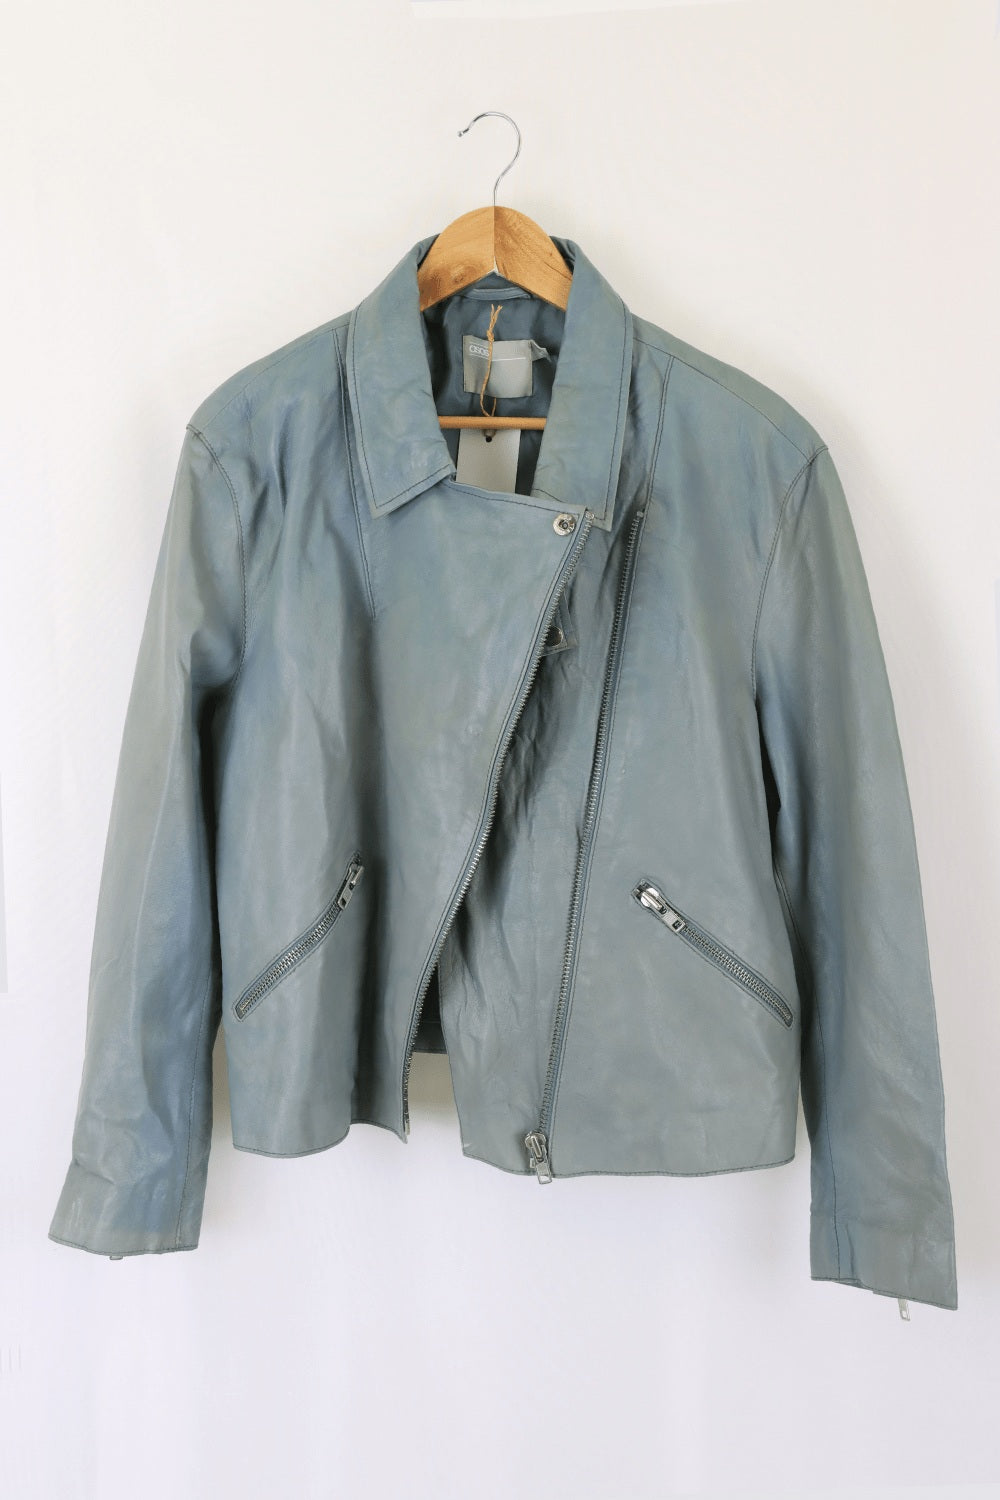 Asos Blue Leather Jacket 16